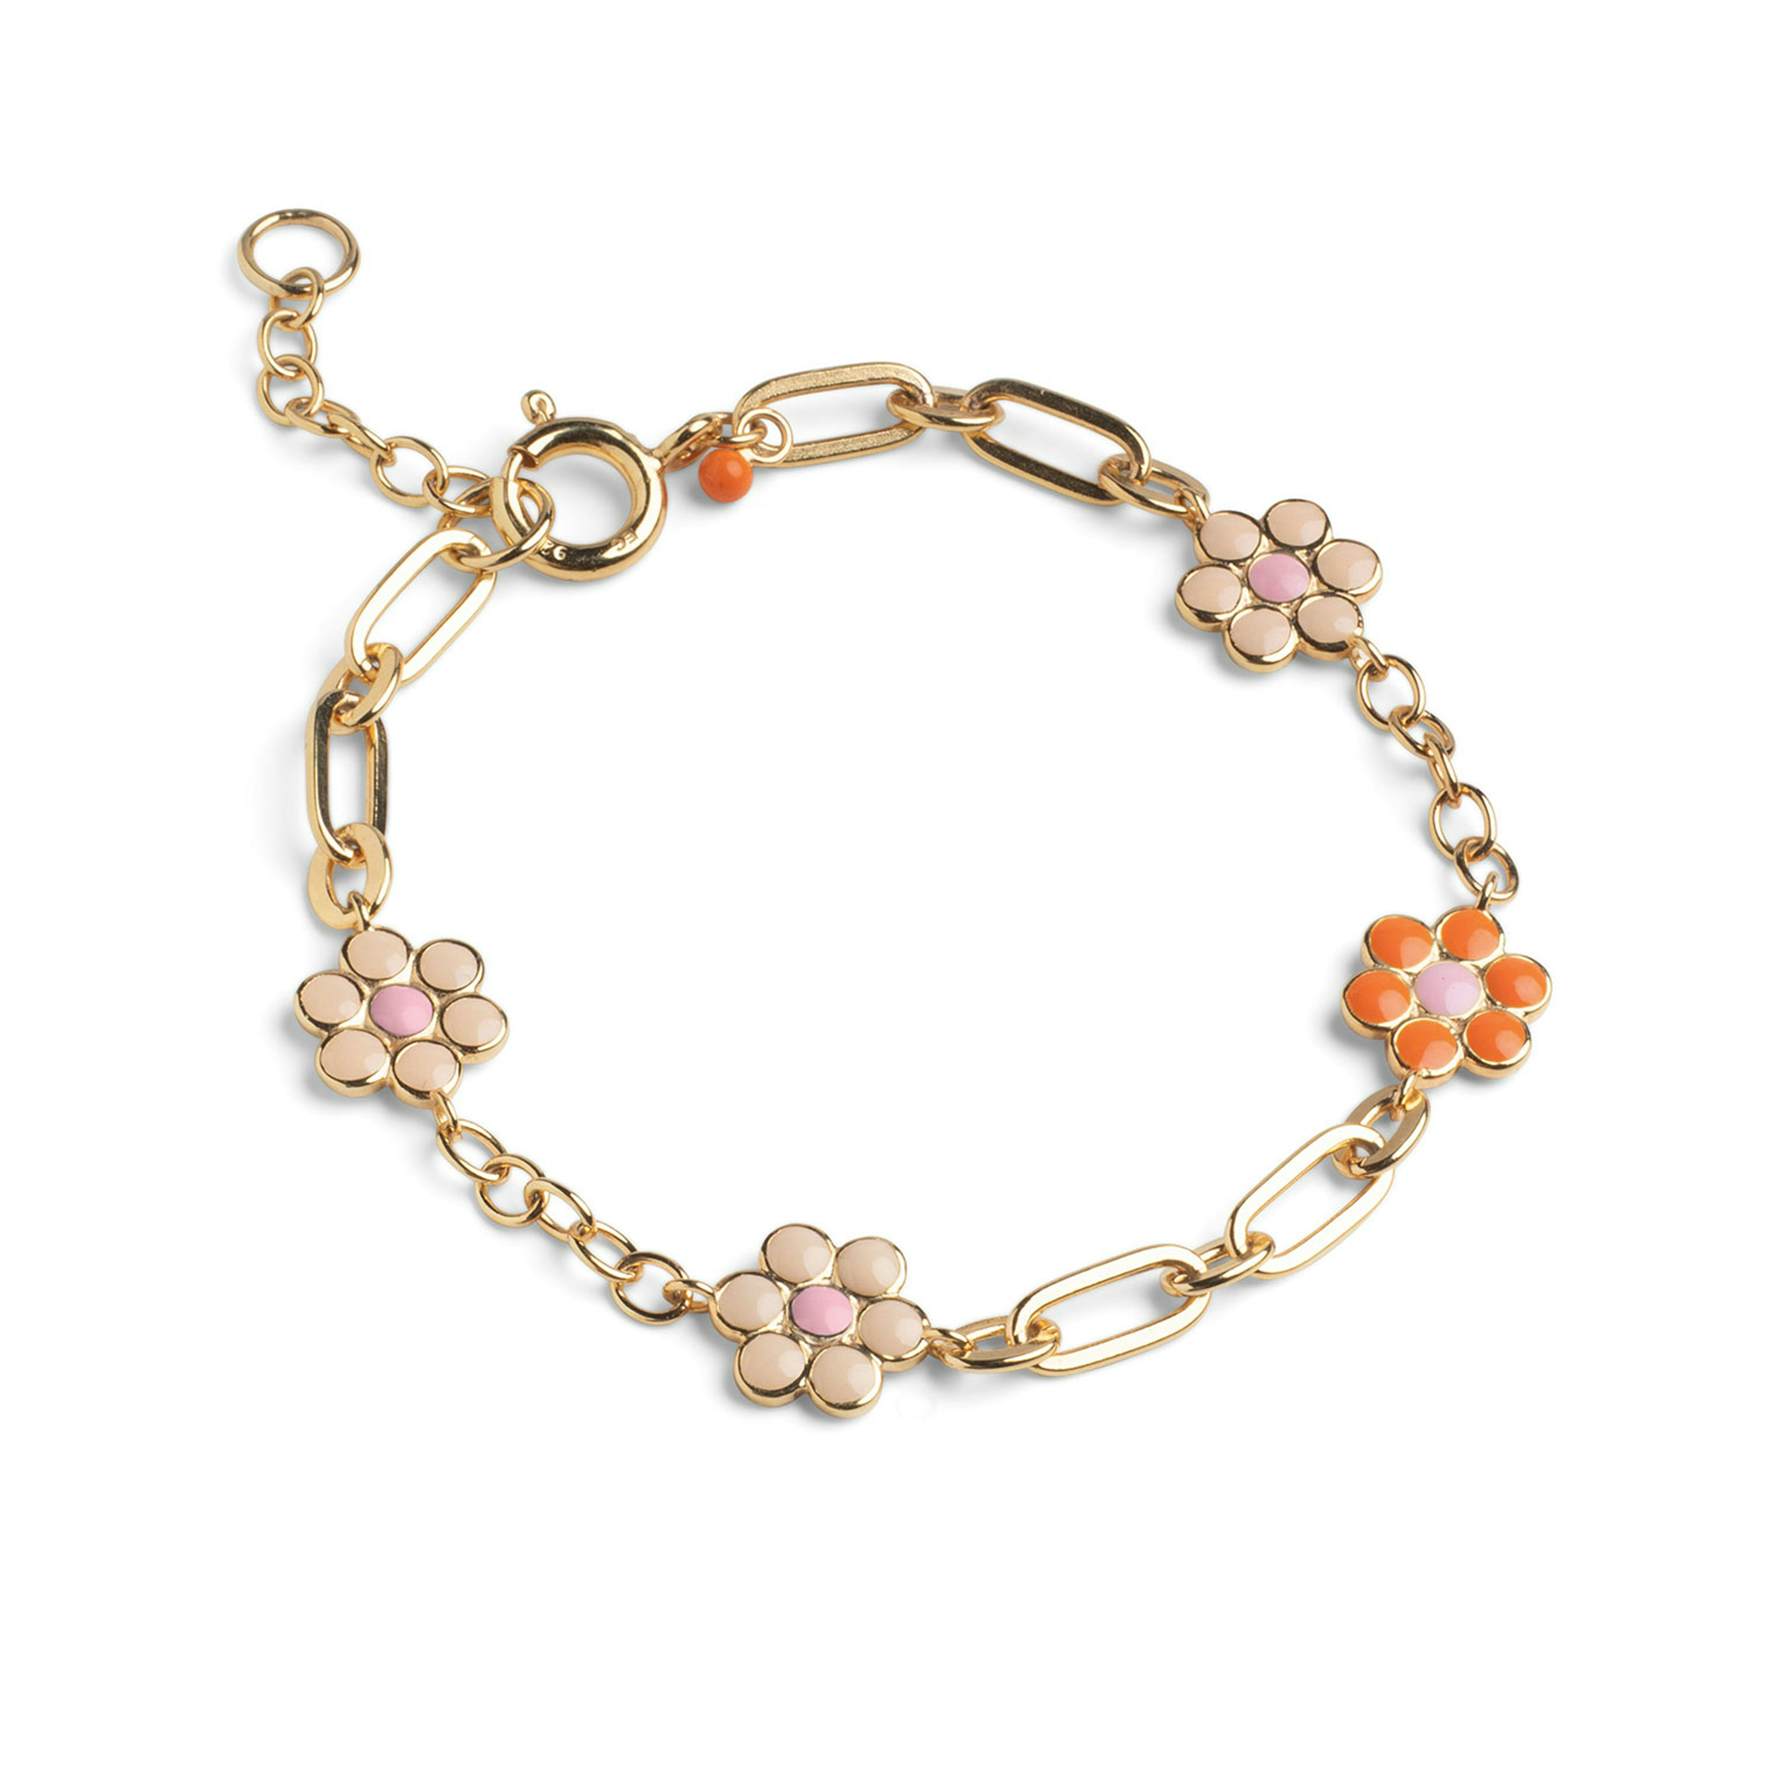 Blossom Bracelet Orange/Beige/Light Blue/Light Pink